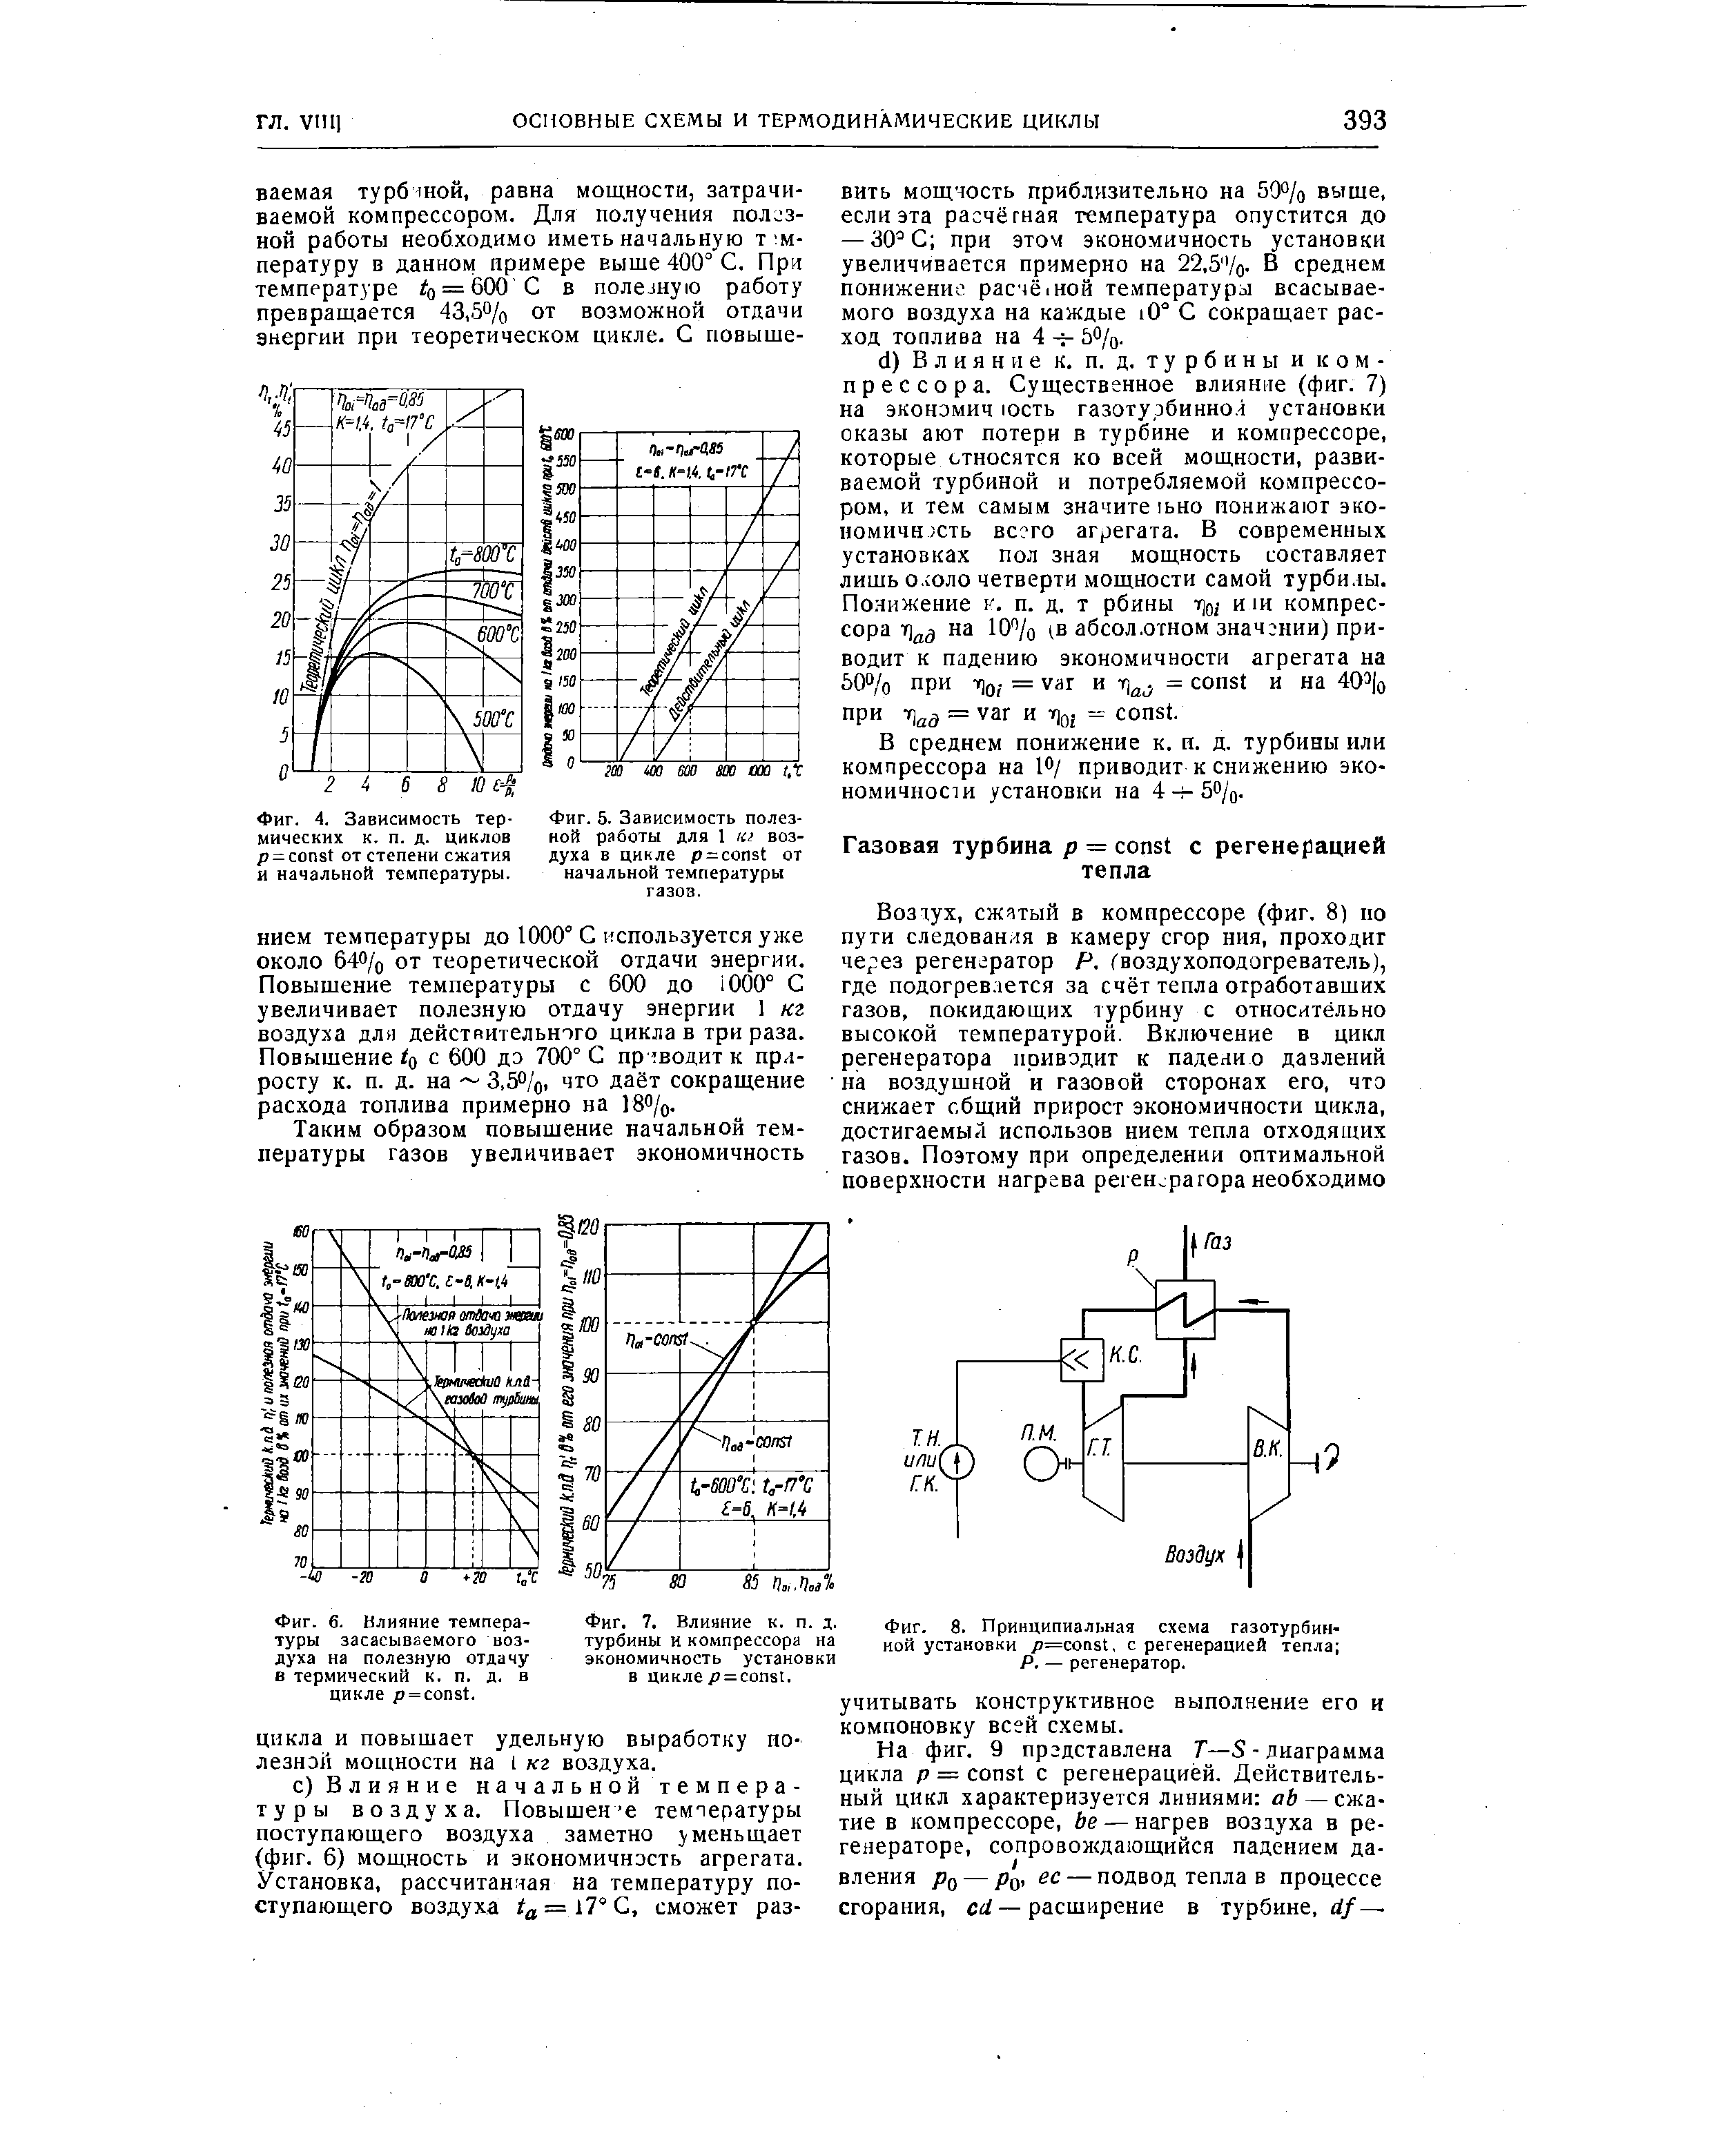 Фиг. 8. Принципиальная схема газотурбинной установки p= ofist, с регенерацией тепла 
